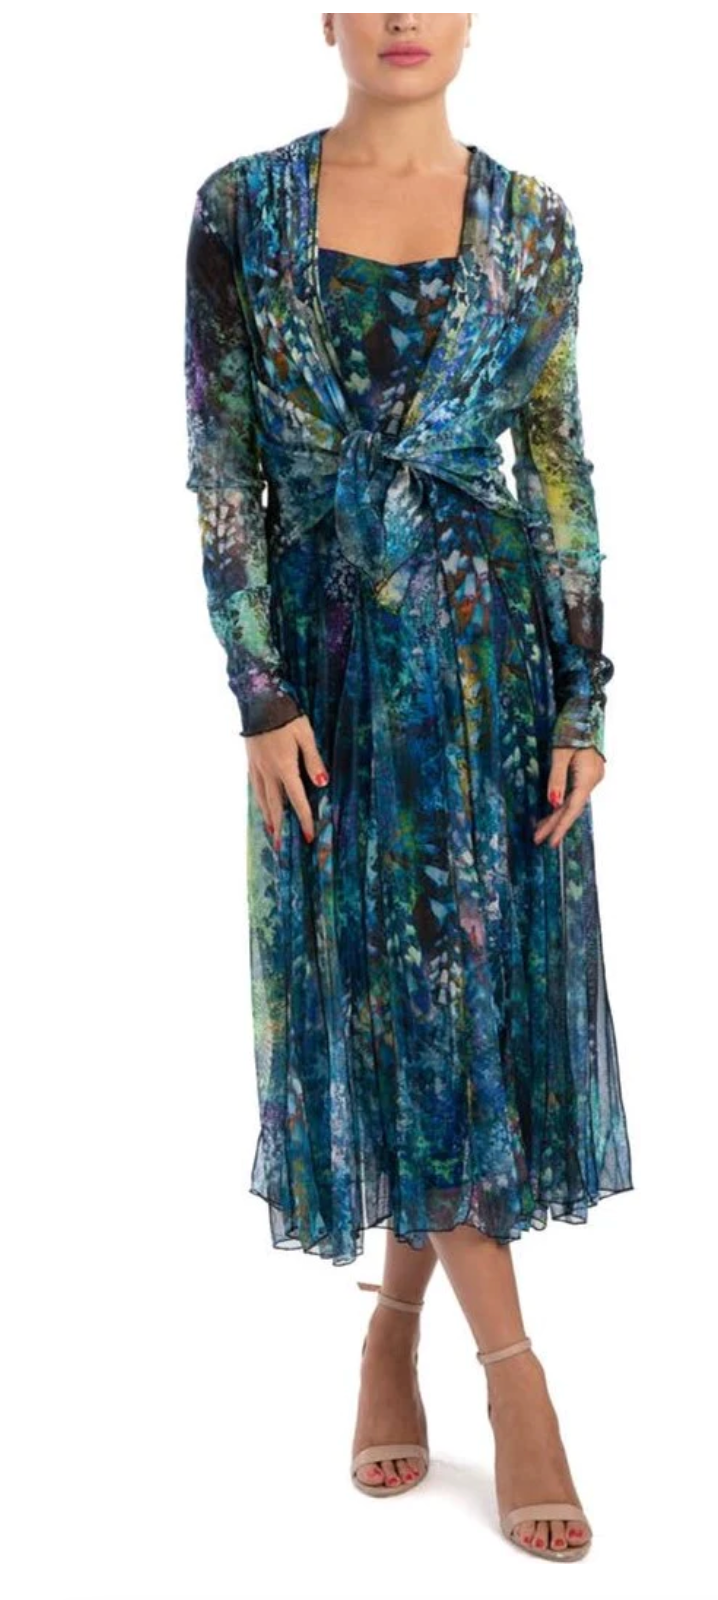 Elana Kattan Quella Printed Dress